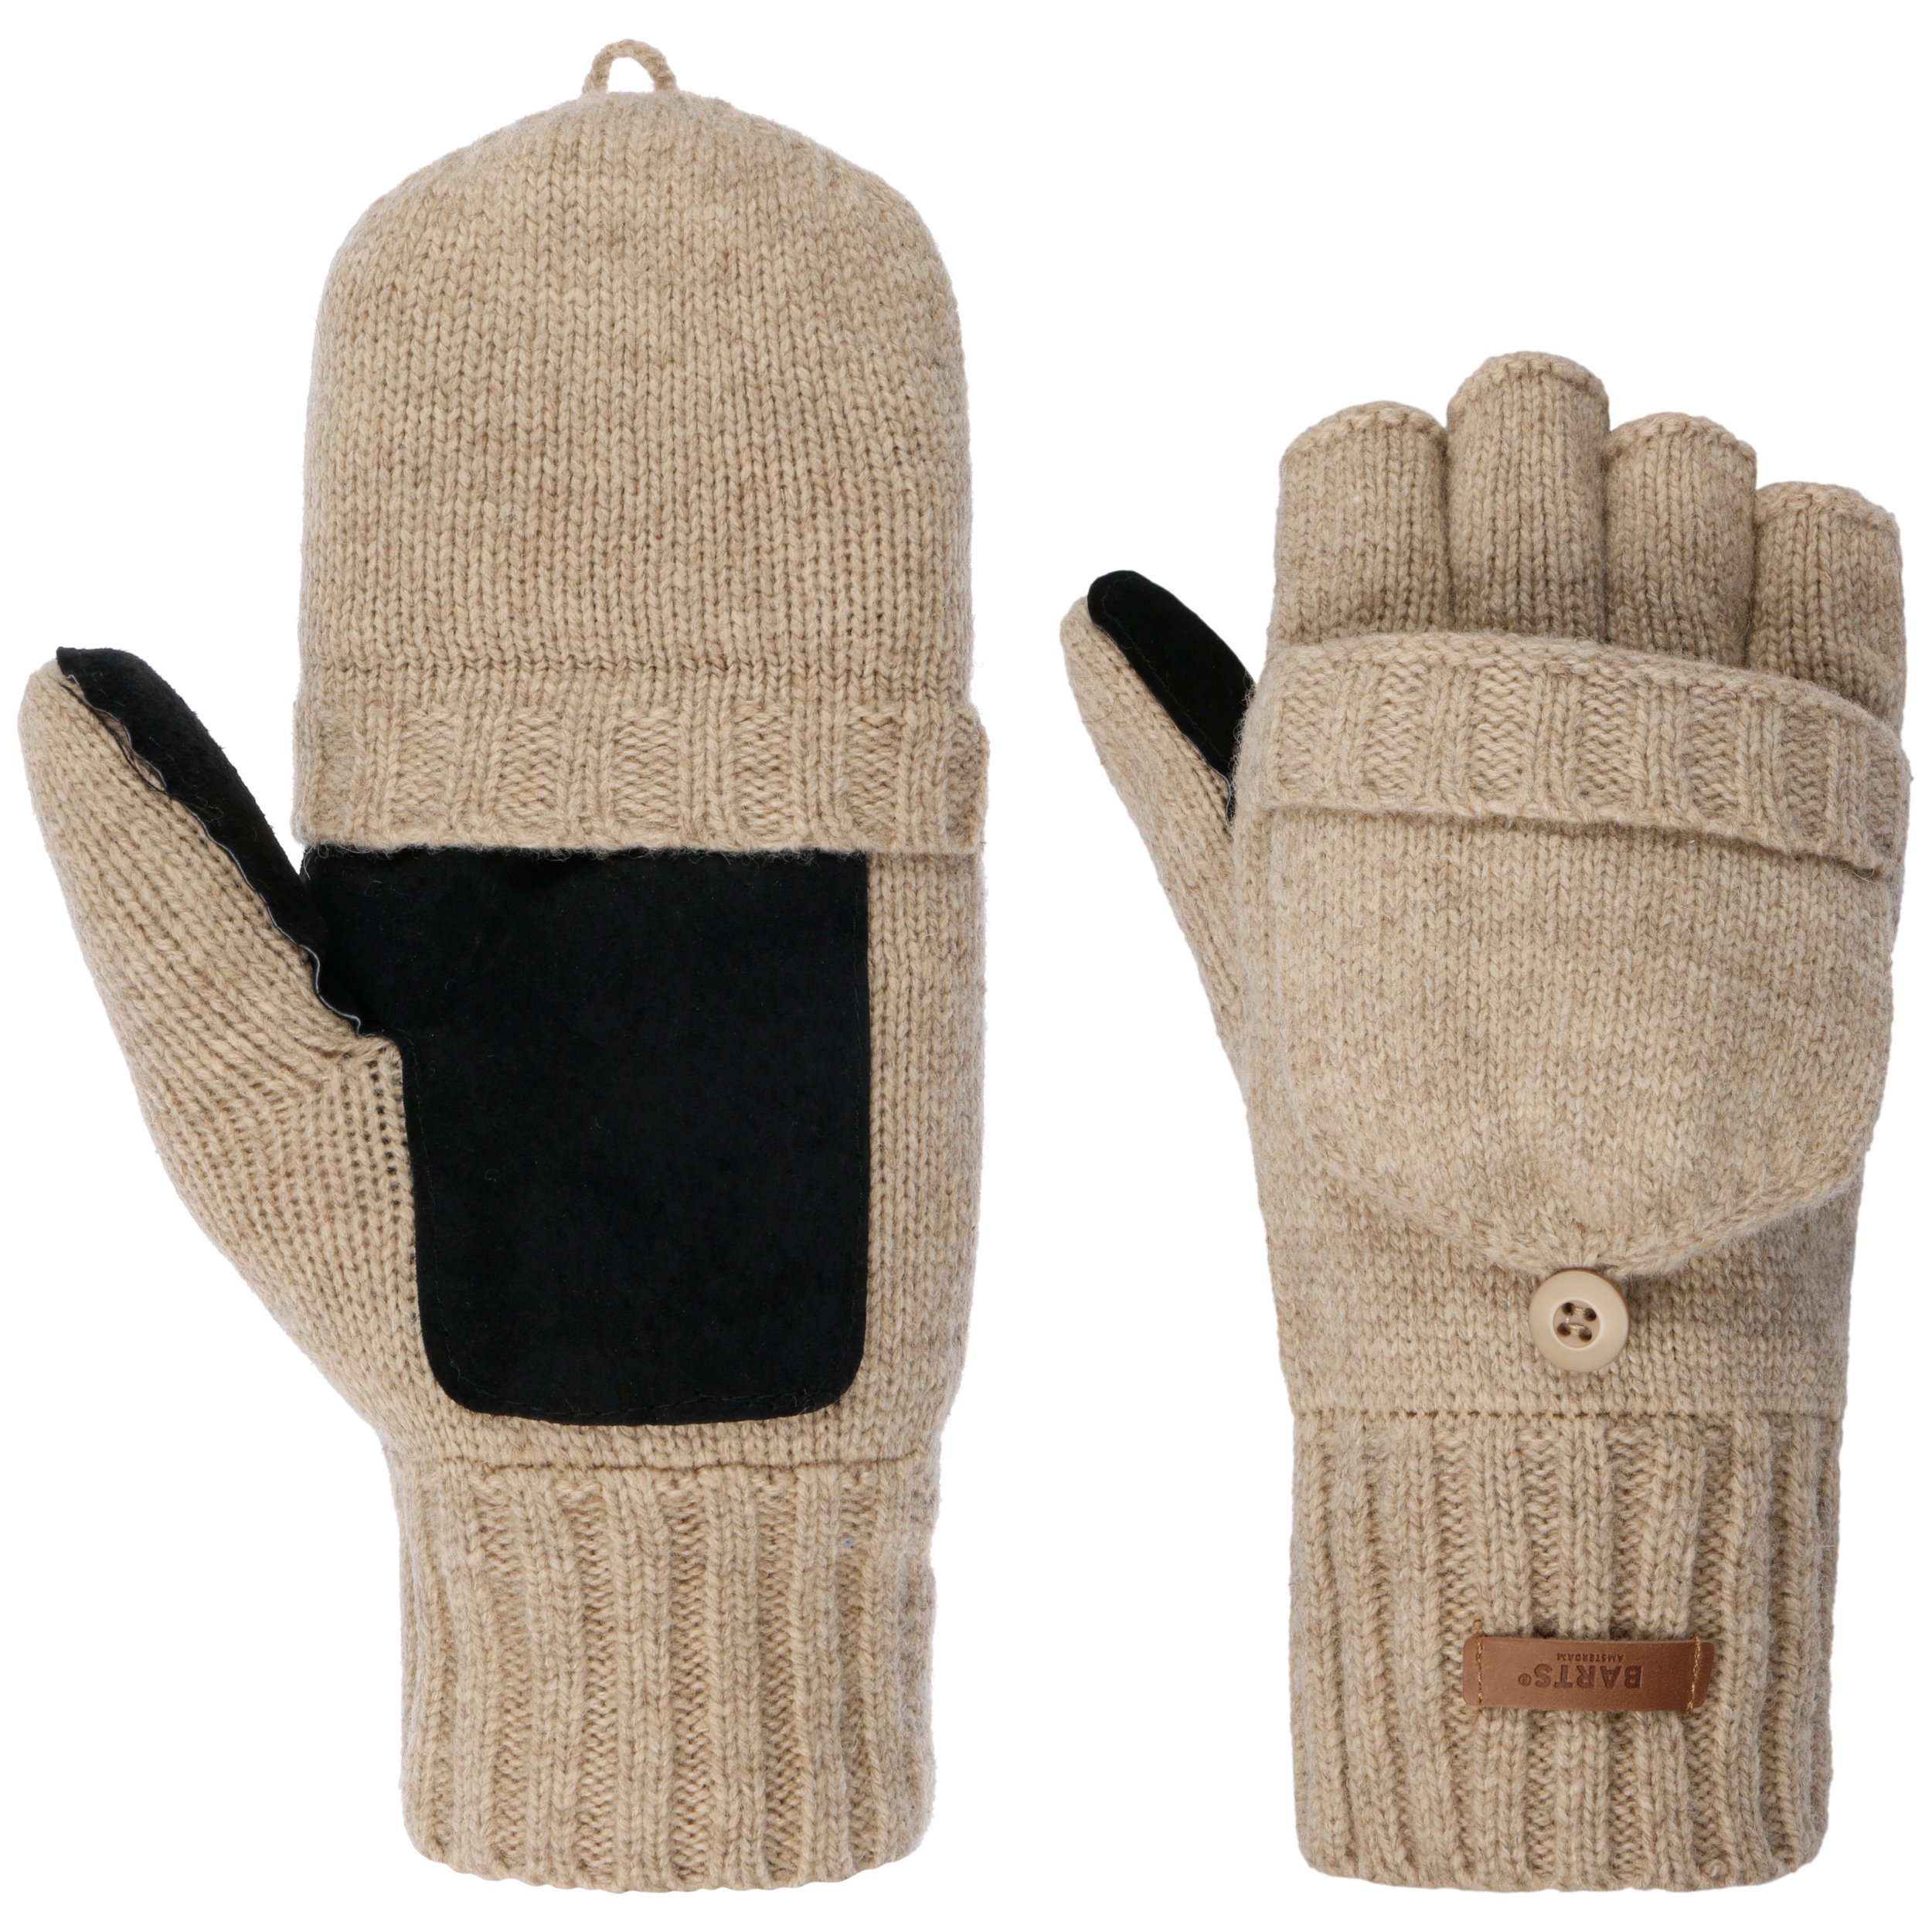 kubiek worstelen Gezamenlijke selectie Haakon Vingerloze Handschoenen by Barts - 44,99 €